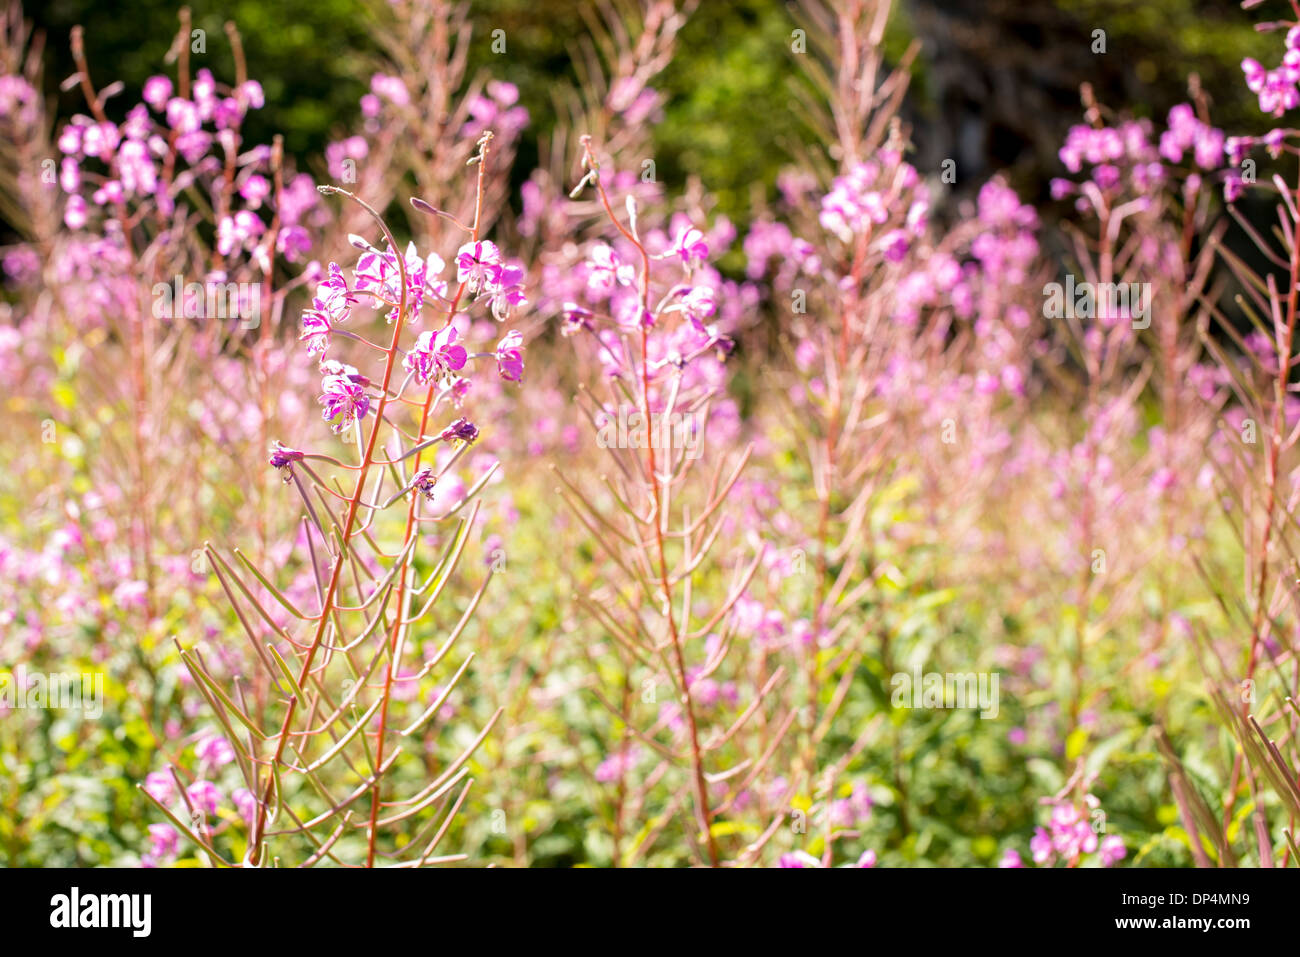 Scottish wildflowers Stock Photo